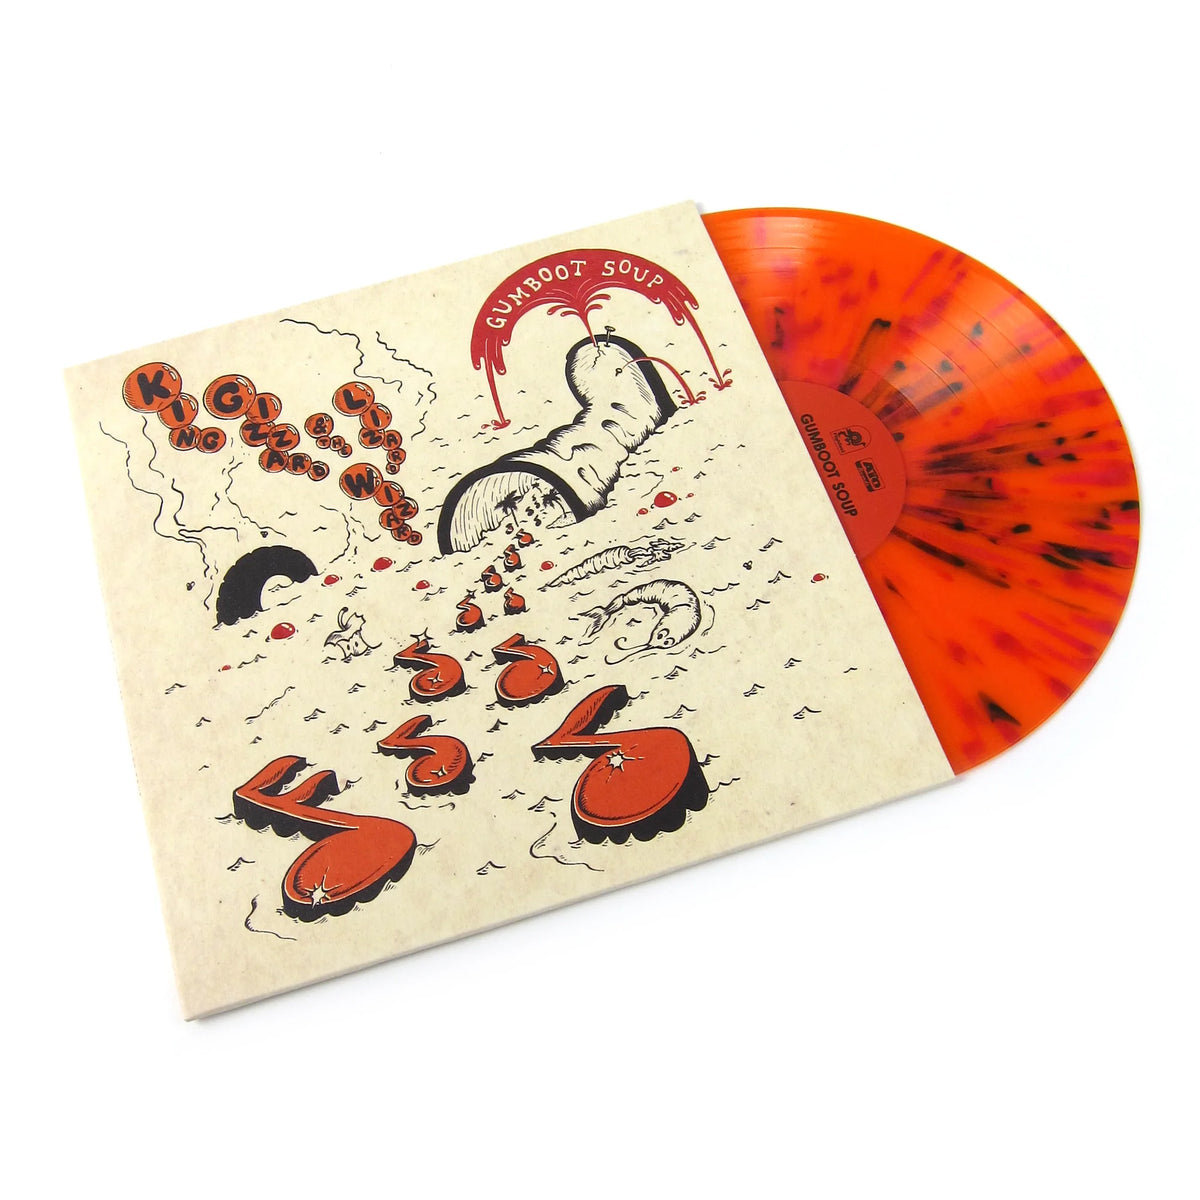 King Gizzard & The Lizard Wizard - Gumboot Soup LP (Orange Splatter Vinyl)